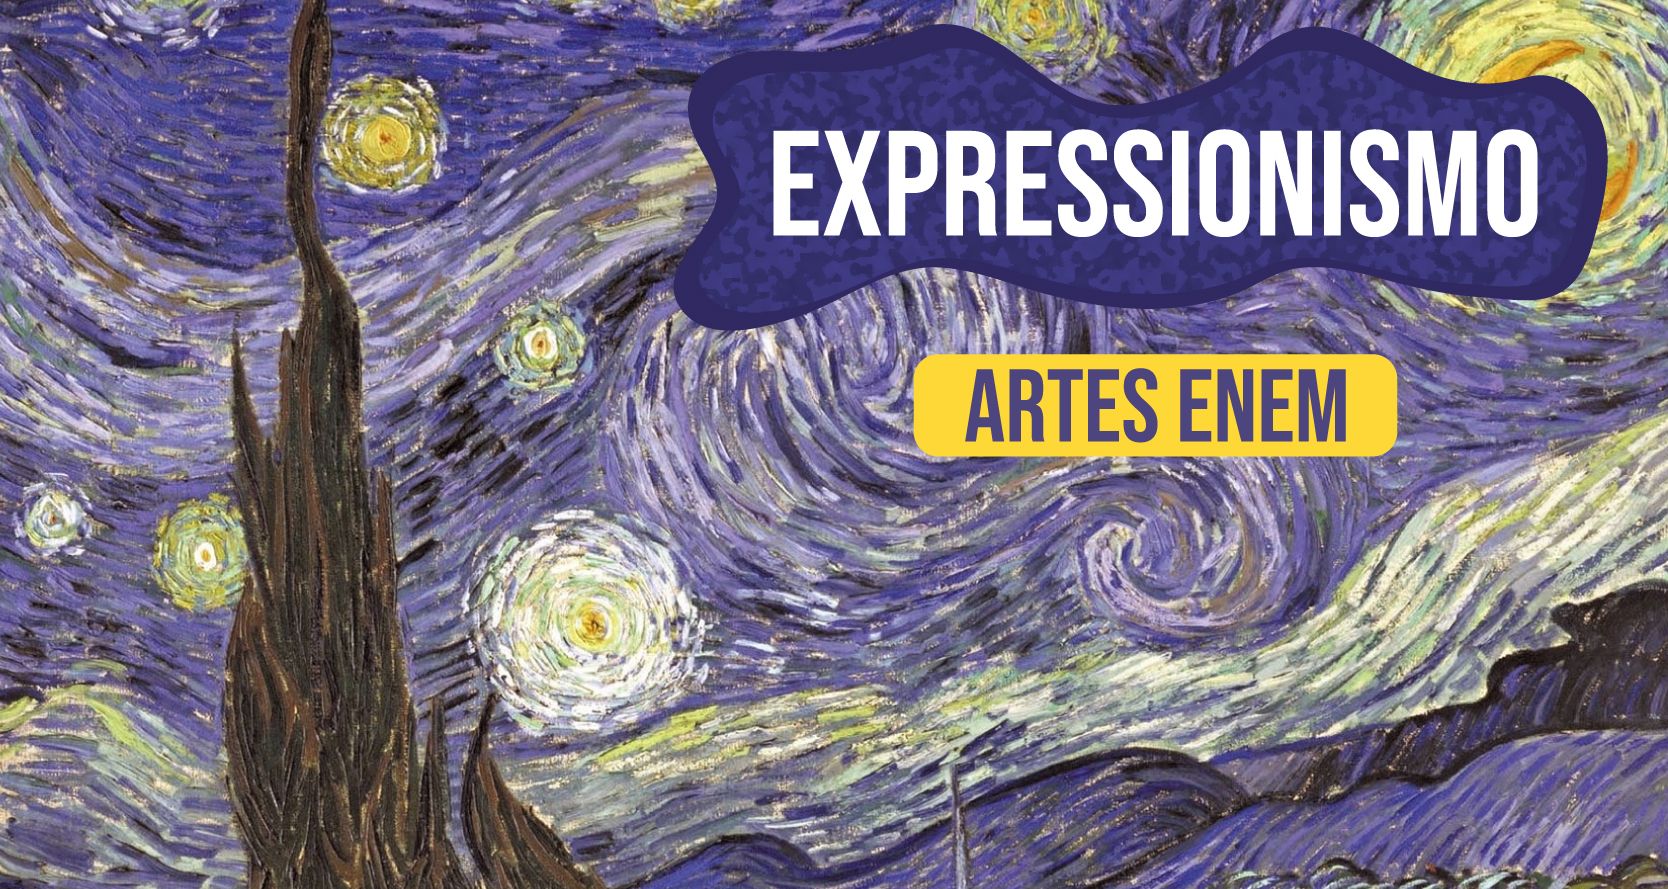 Expressionismo (início Do Século Xx): O Que é, Origem, Características, Fases, Obras E Artistas